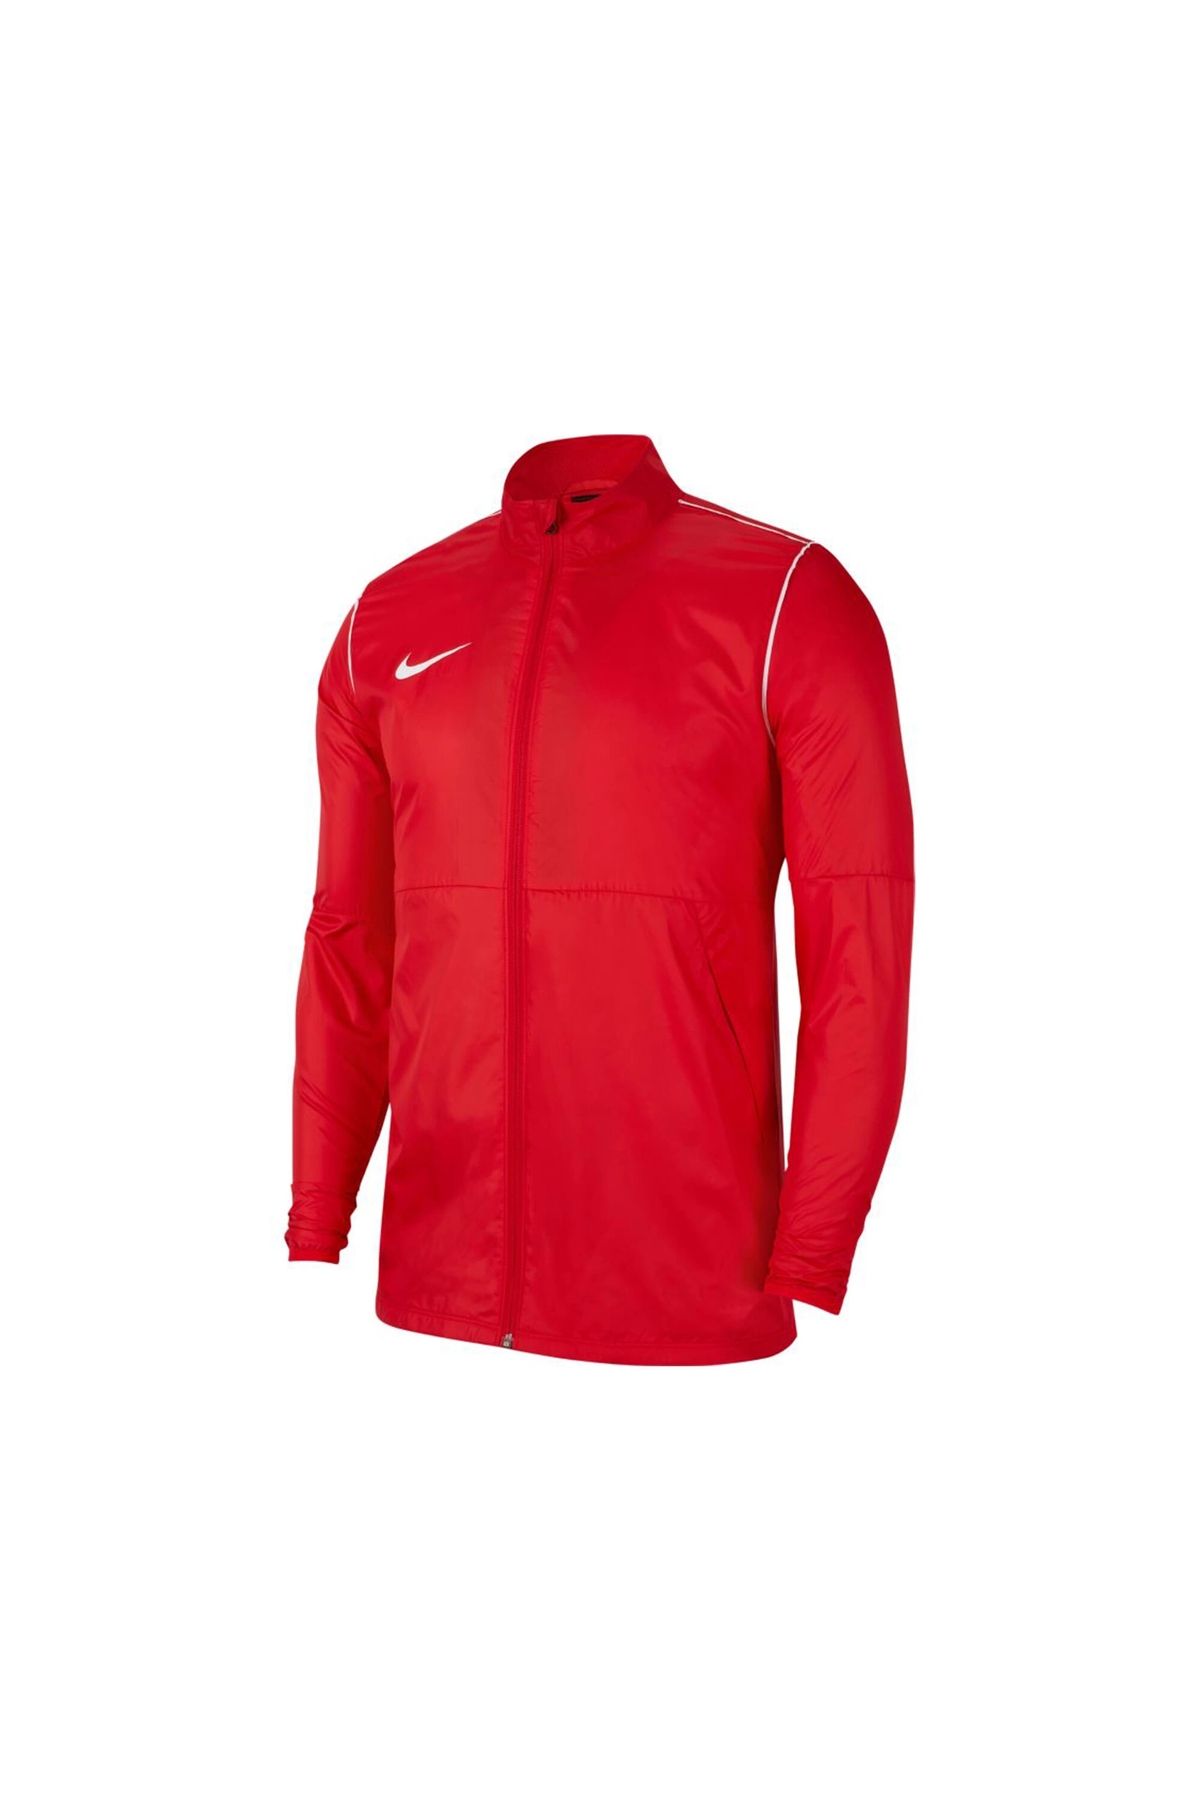 Nike Repel Park20 Erkek Kırmızı Futbol Yağmurluk Bv6881-657